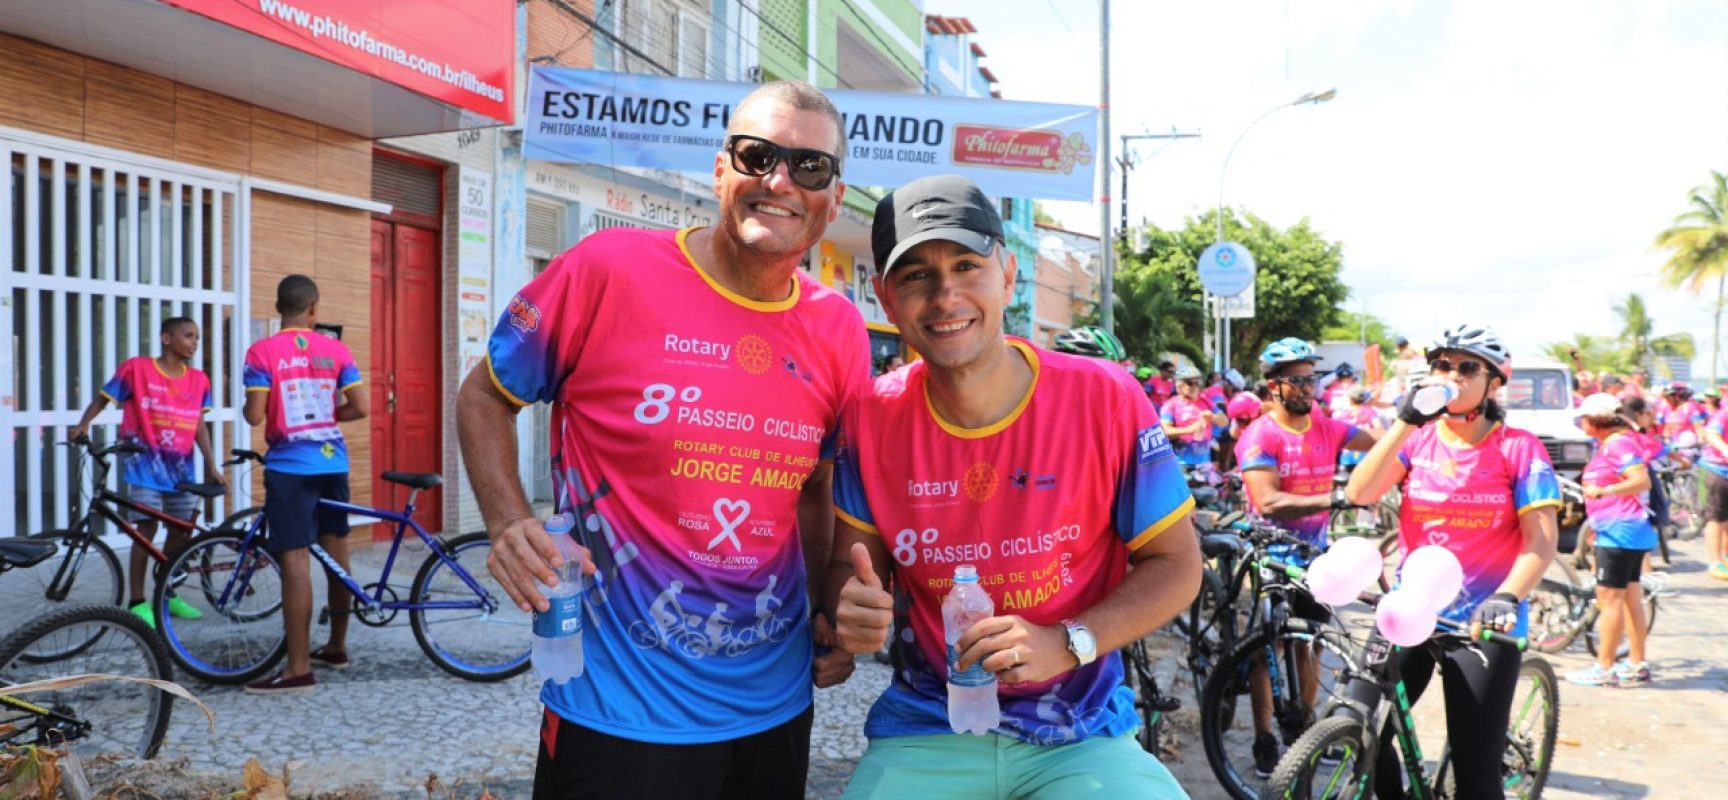 Colorido especial toma ruas de Ilhéus em passeio ciclístico contra o câncer de mama